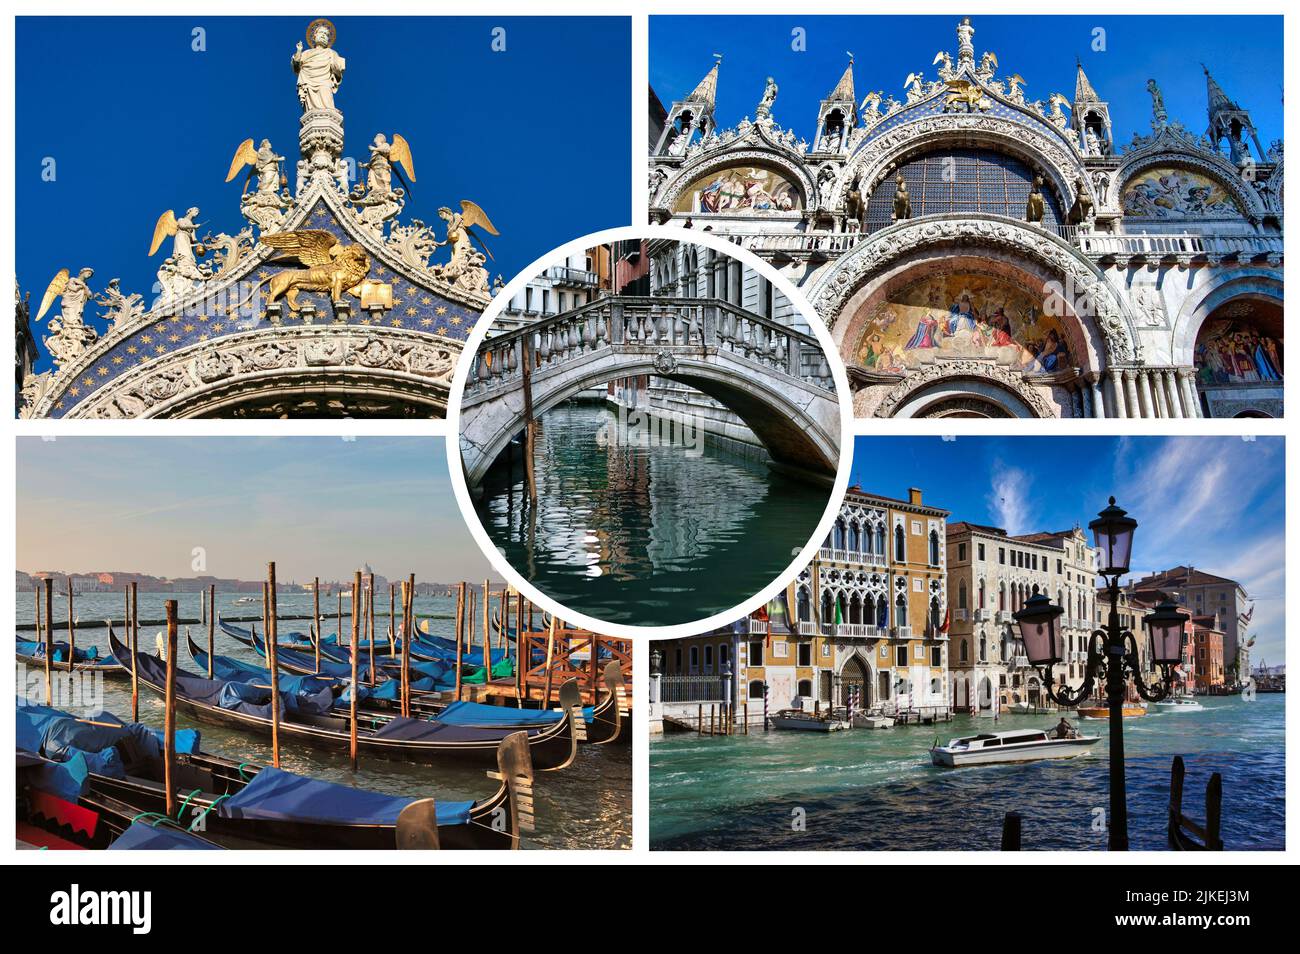 La célèbre Venise, capitale de la Vénétie, (Italie) se trouve sur plus de 100 petites îles dans un lagon de la mer Adriatique. Banque D'Images